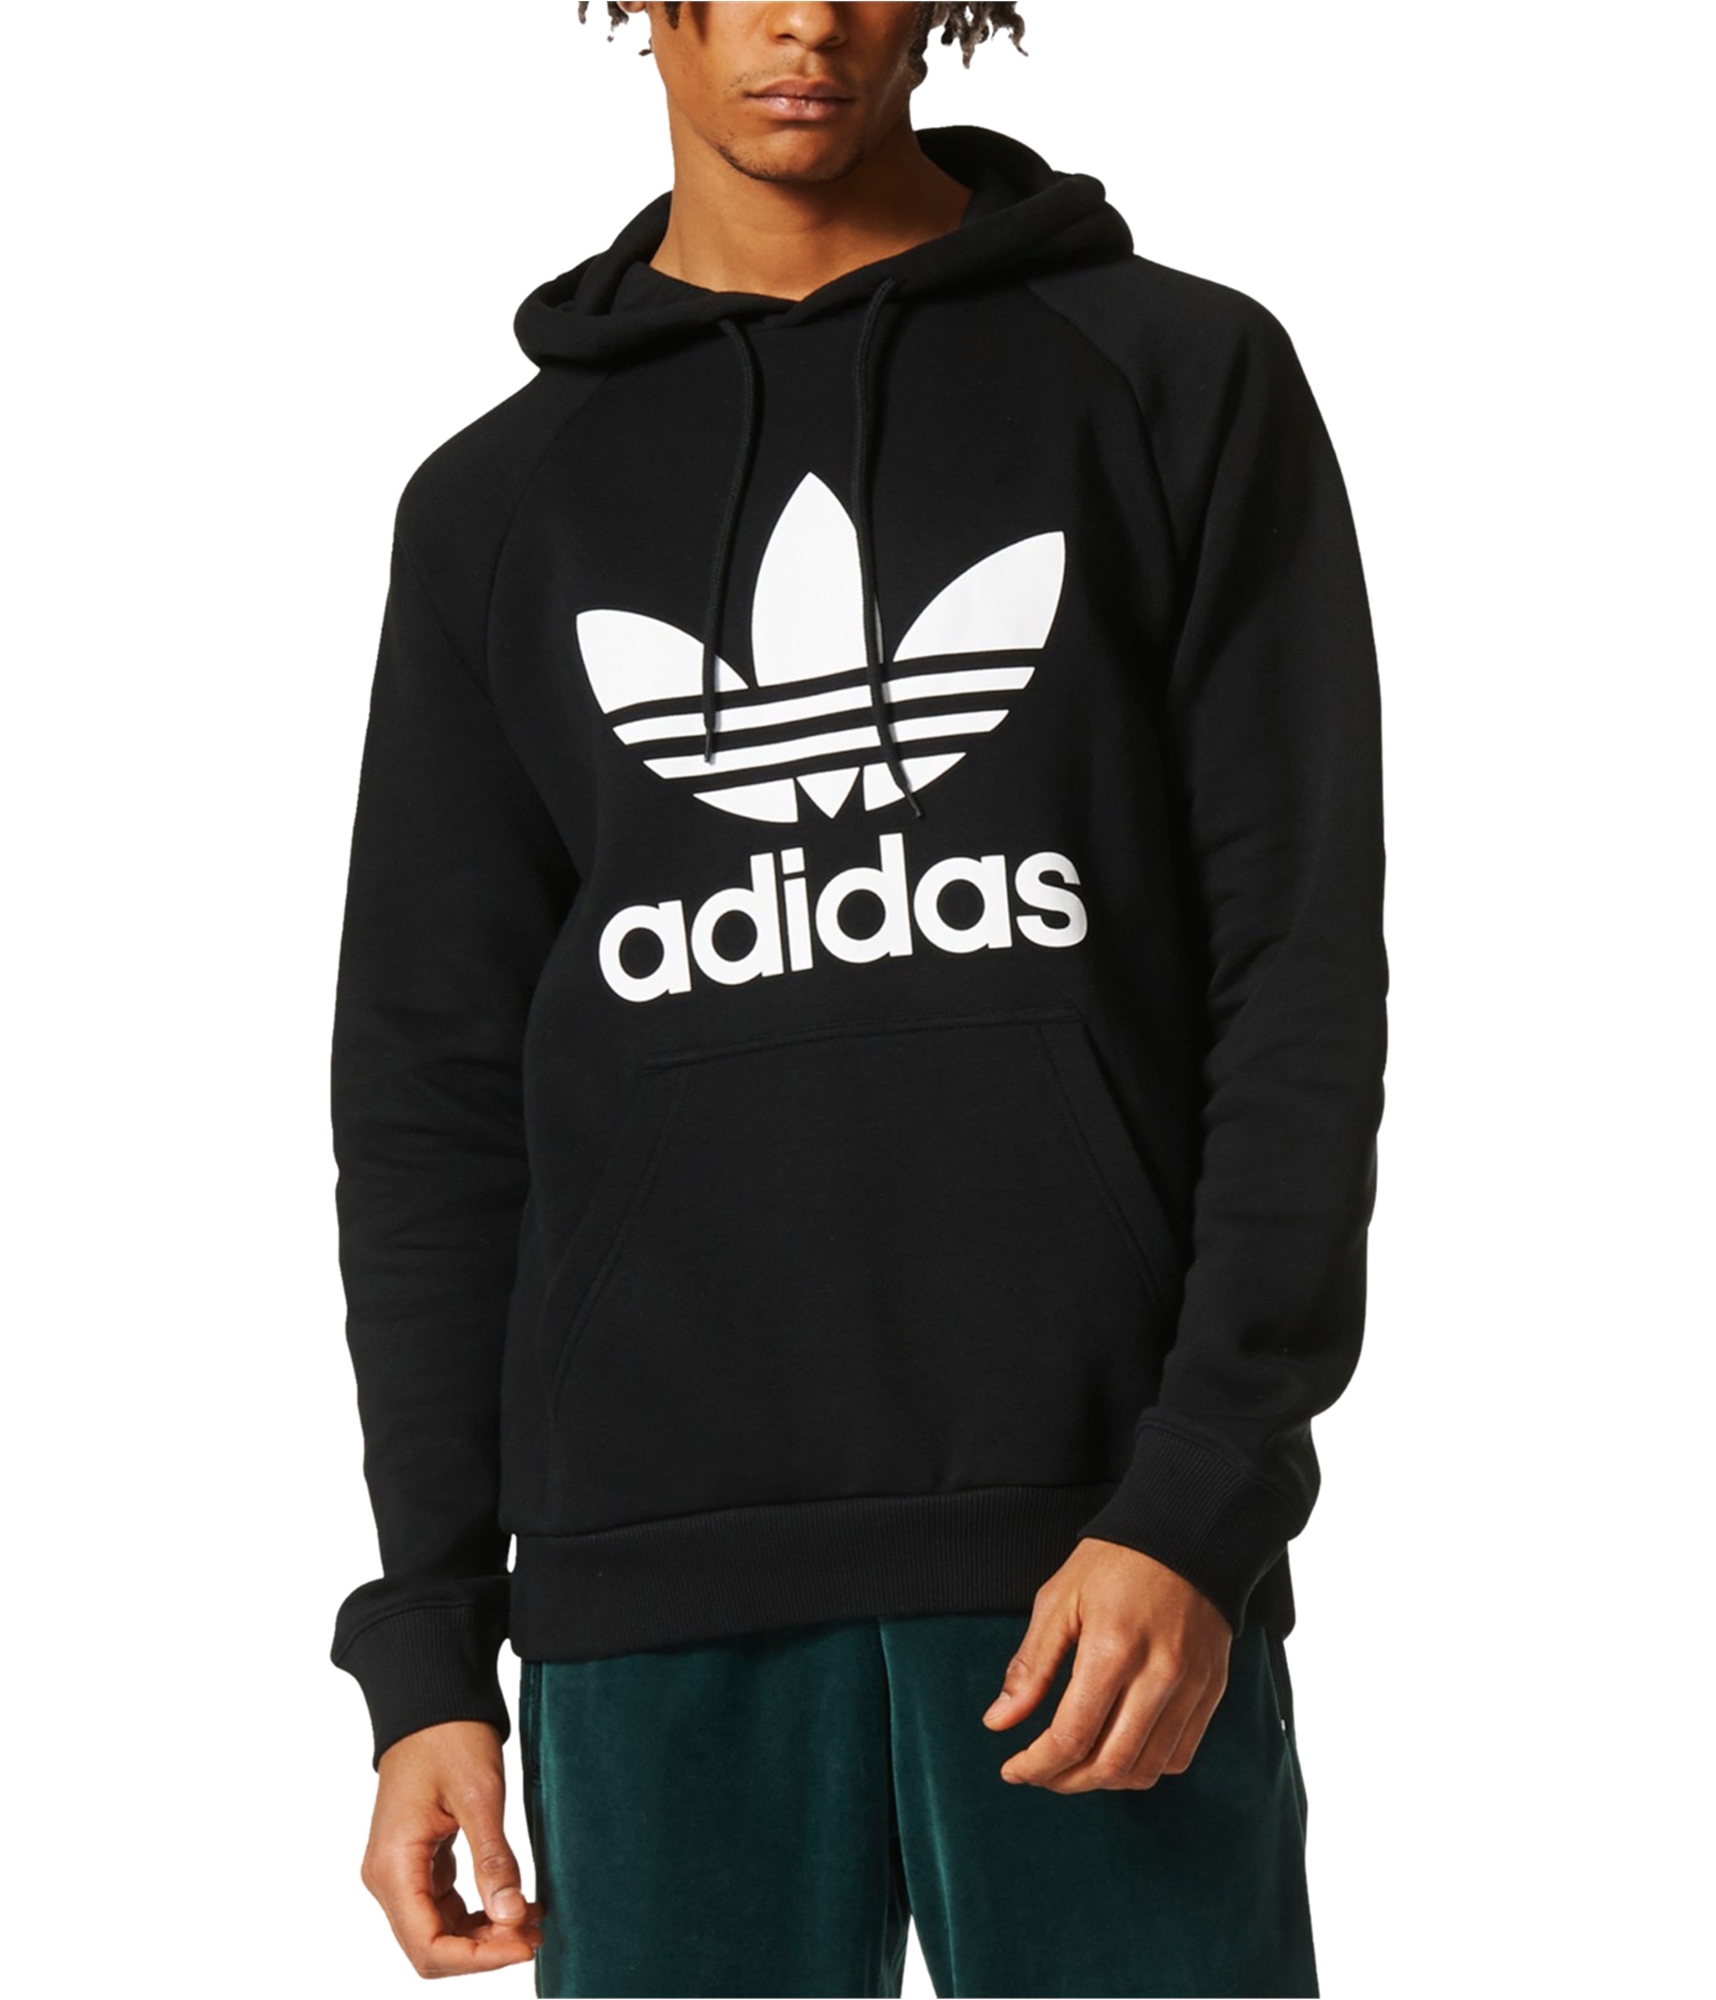 Buy a Mens Adidas Trefoil Hoodie Sweatshirt Online | TagsWeekly.com, TW2